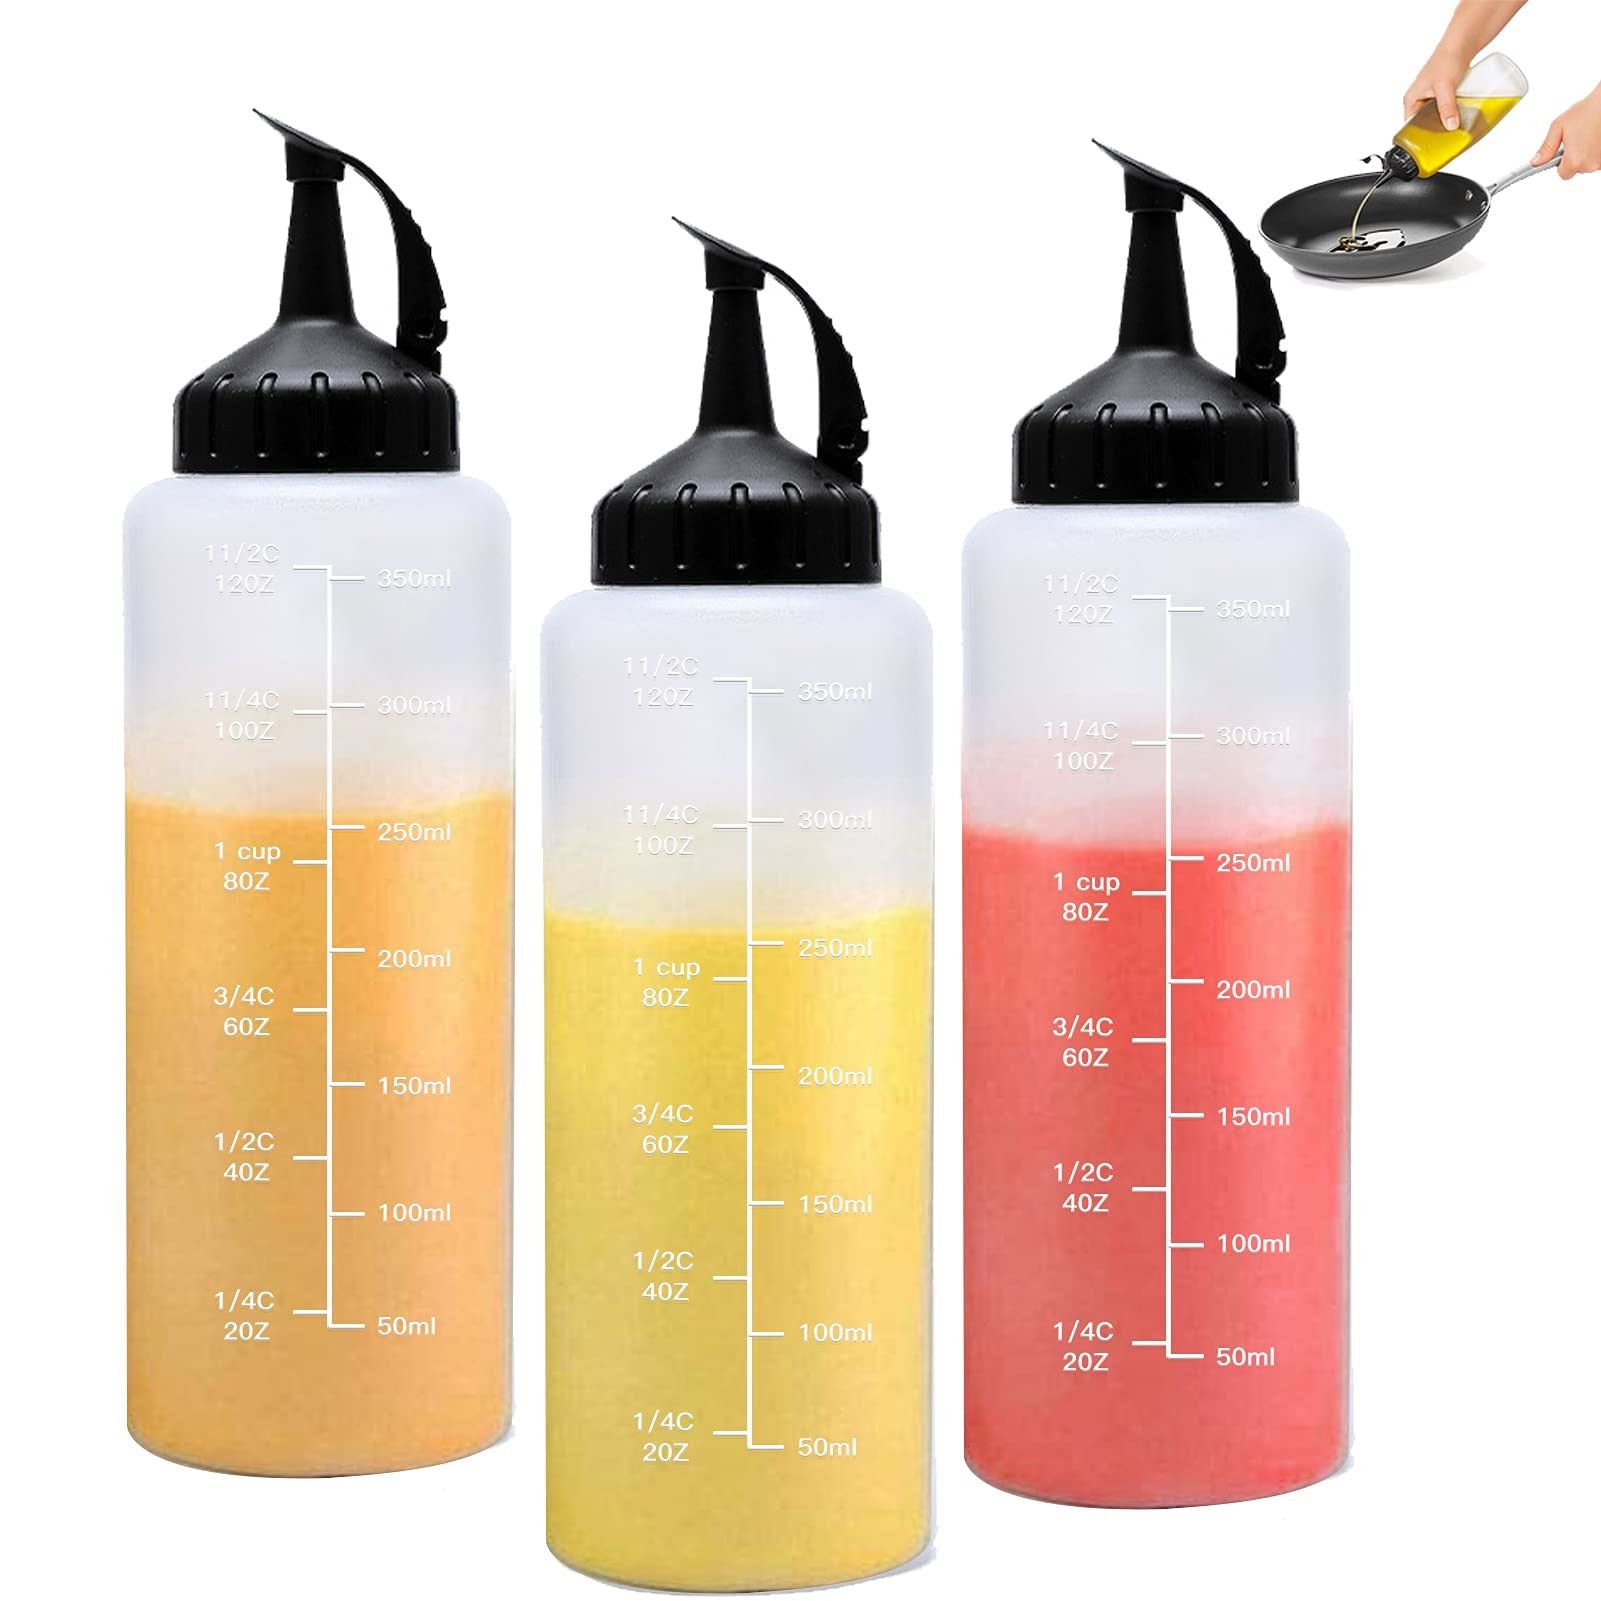 3Pcs Plastic Squeeze Condiment Bottles 12oz; Oil Dispenser Bottle; Refillable With Twist On Cap Lids; For Barbecue Sauce; Oil; Condiments; Kitchen Supplies